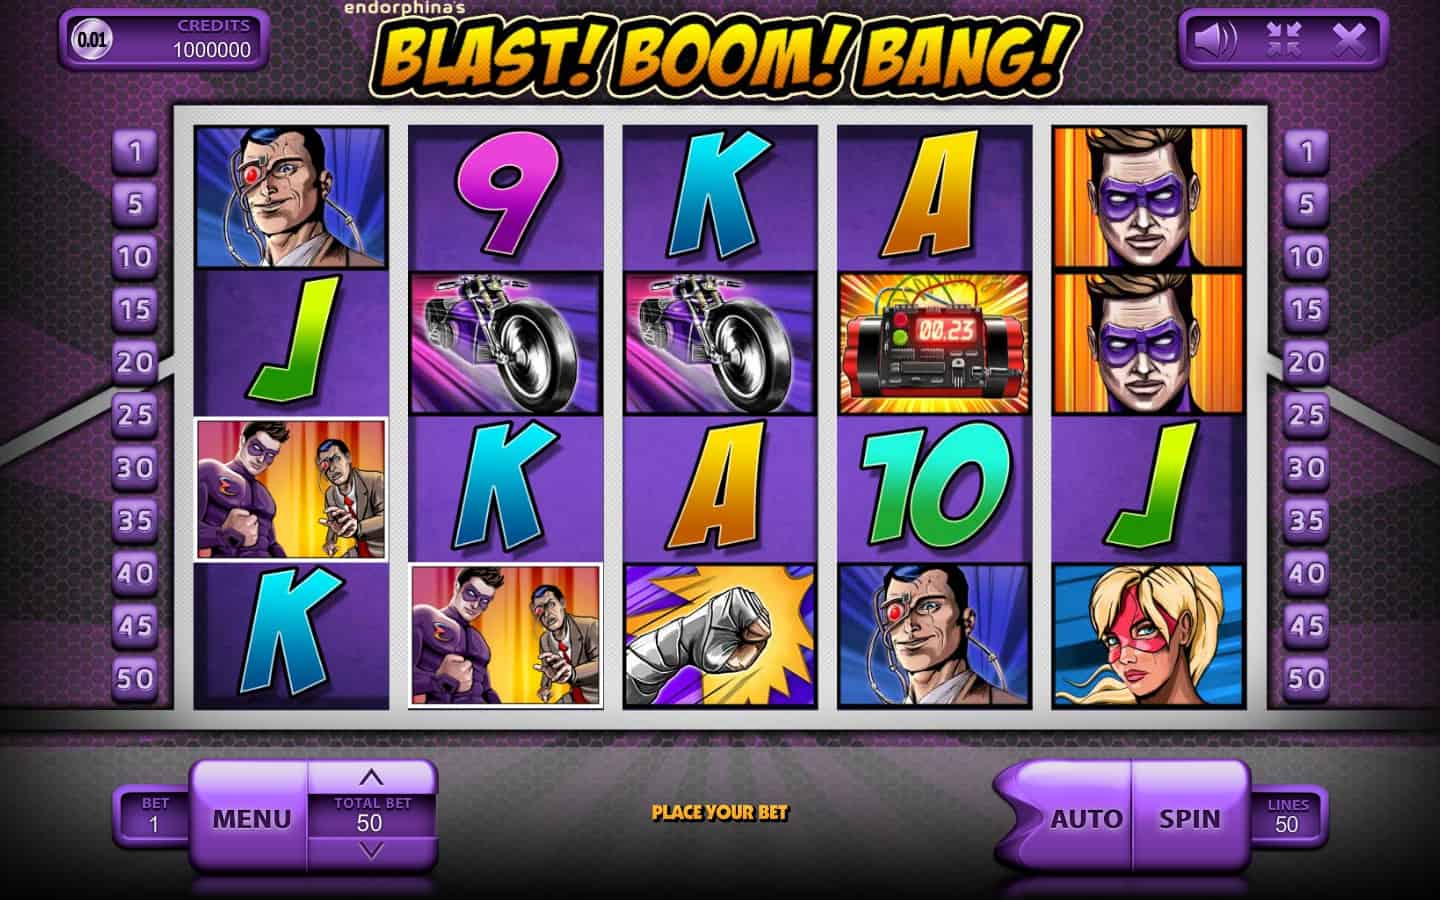 Blast! Boom! Bang! Review